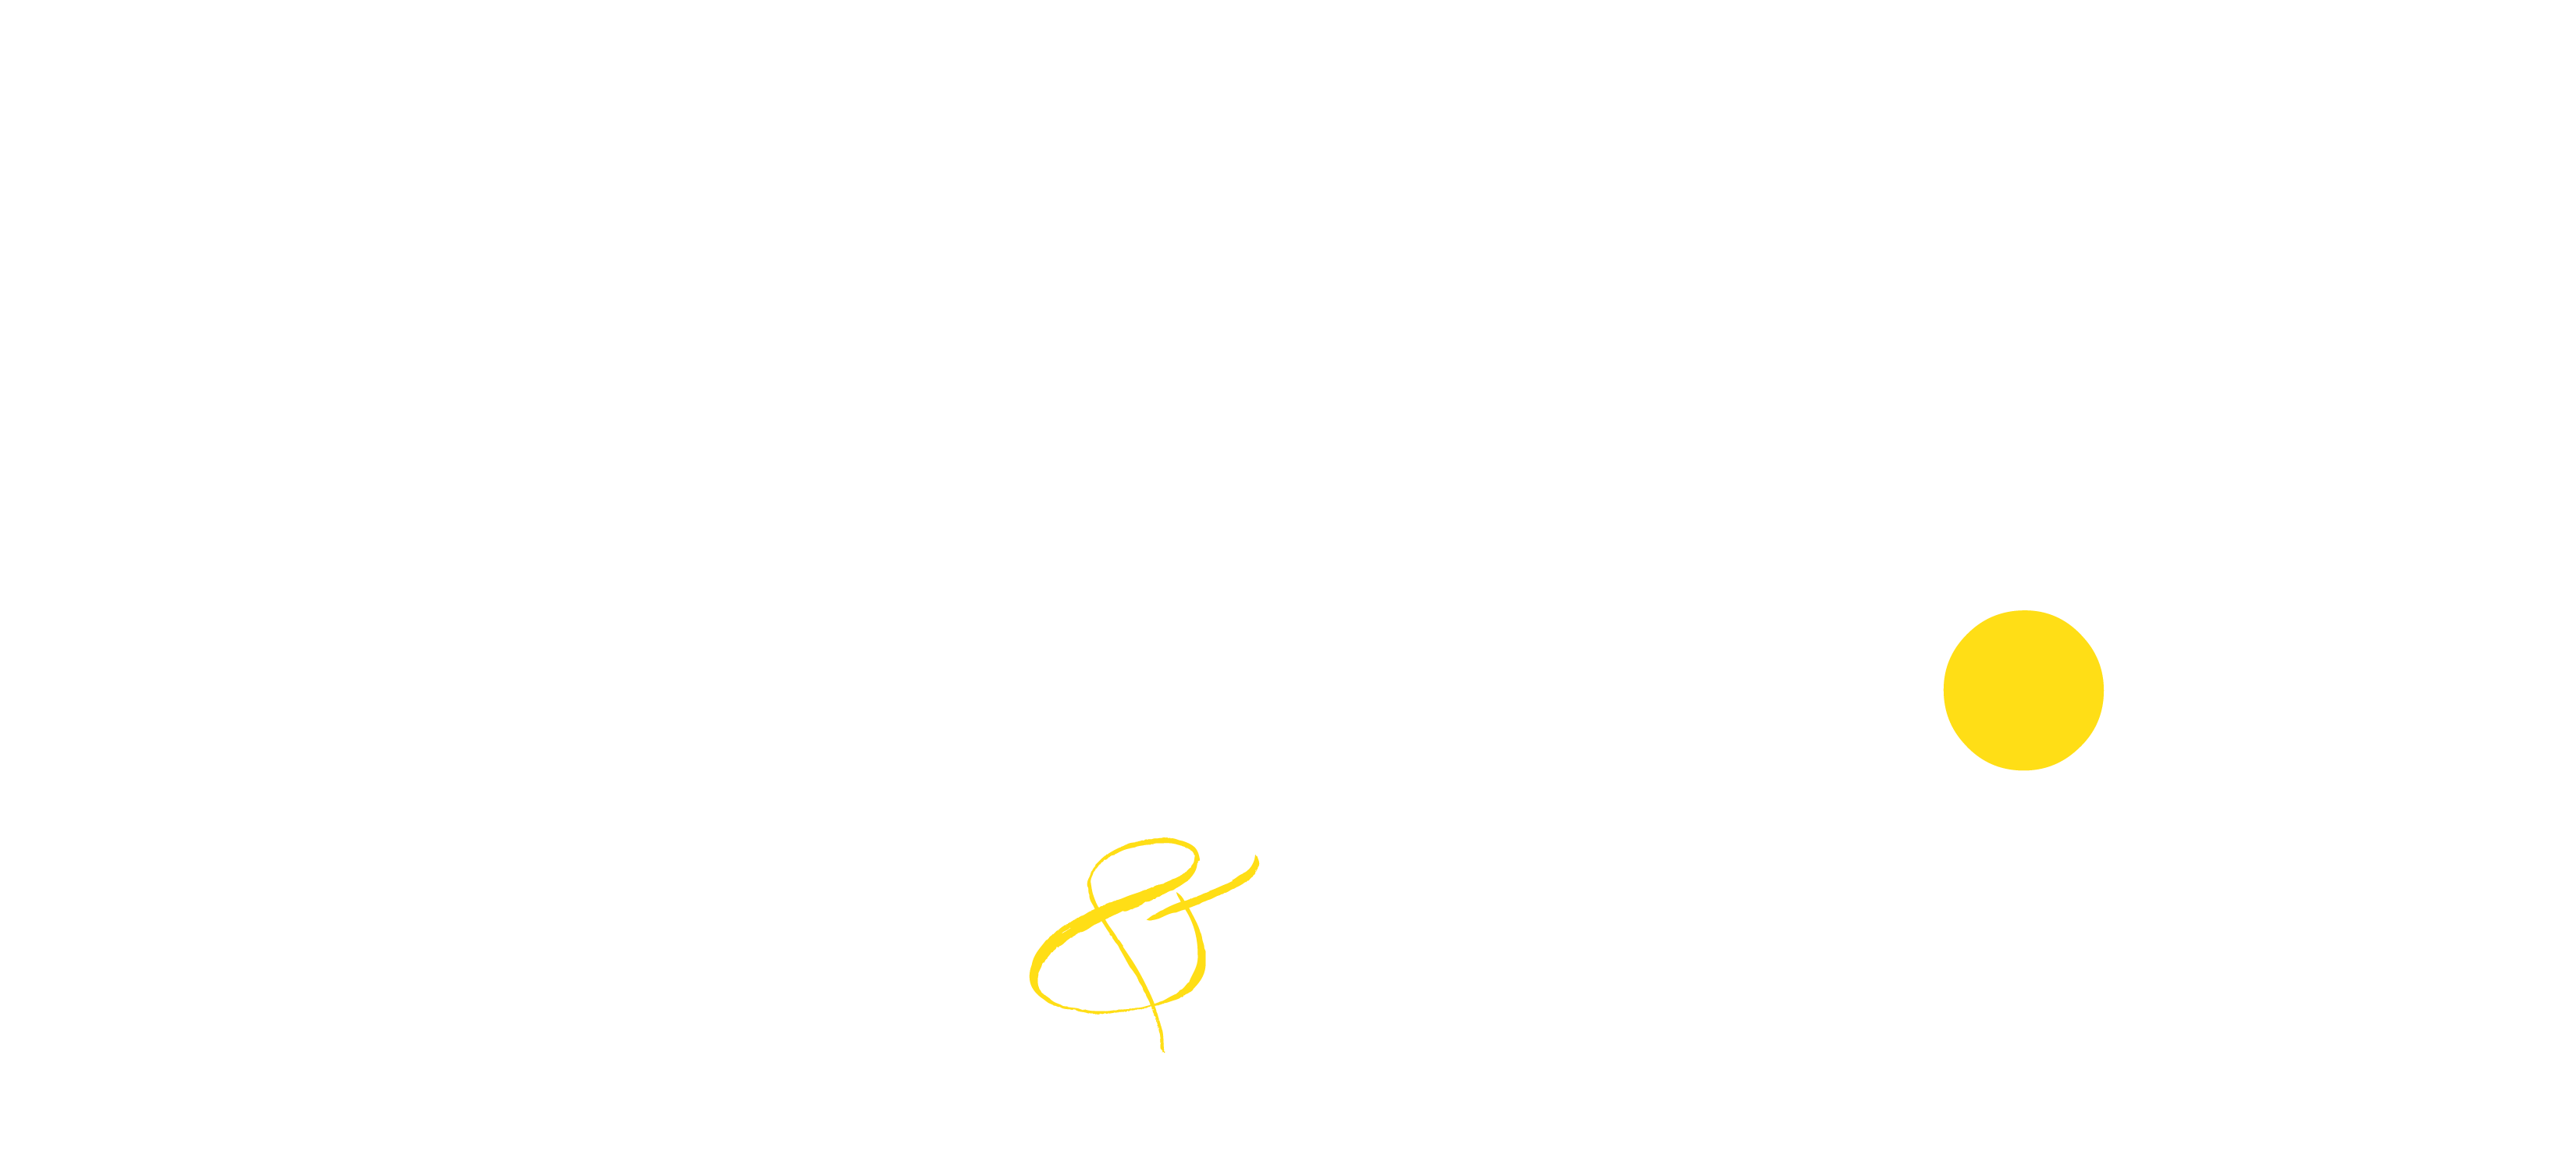 Drybar Logo - Shine. Salon & Drybar | West Dundee and Hampshire Salons